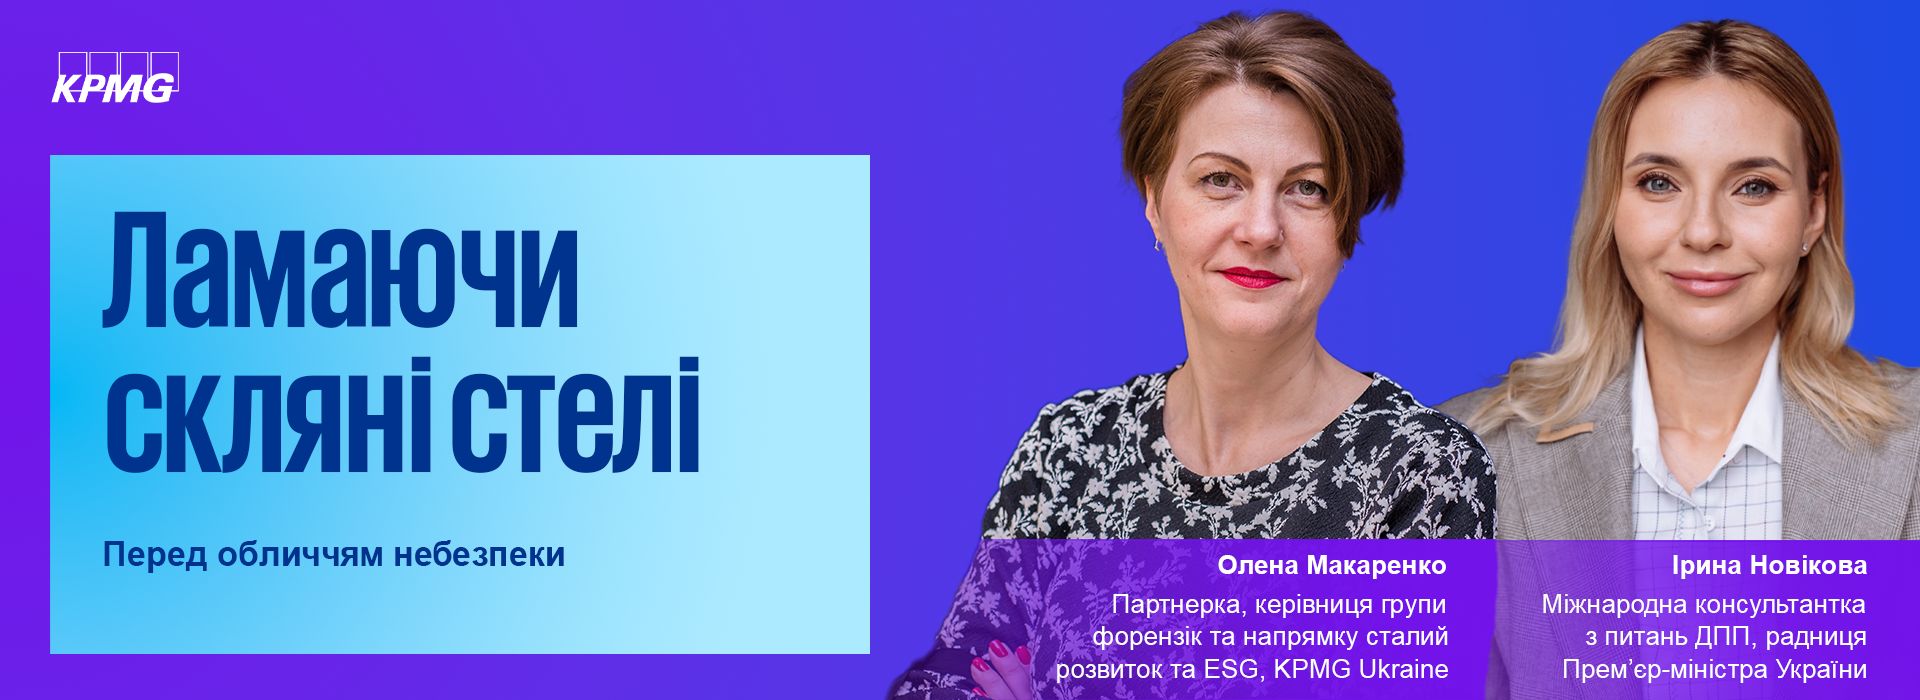 Ірина Новікова, міжнародна консультантка з питань державно-приватних партнерств, радниця Прем’єр-міністра України